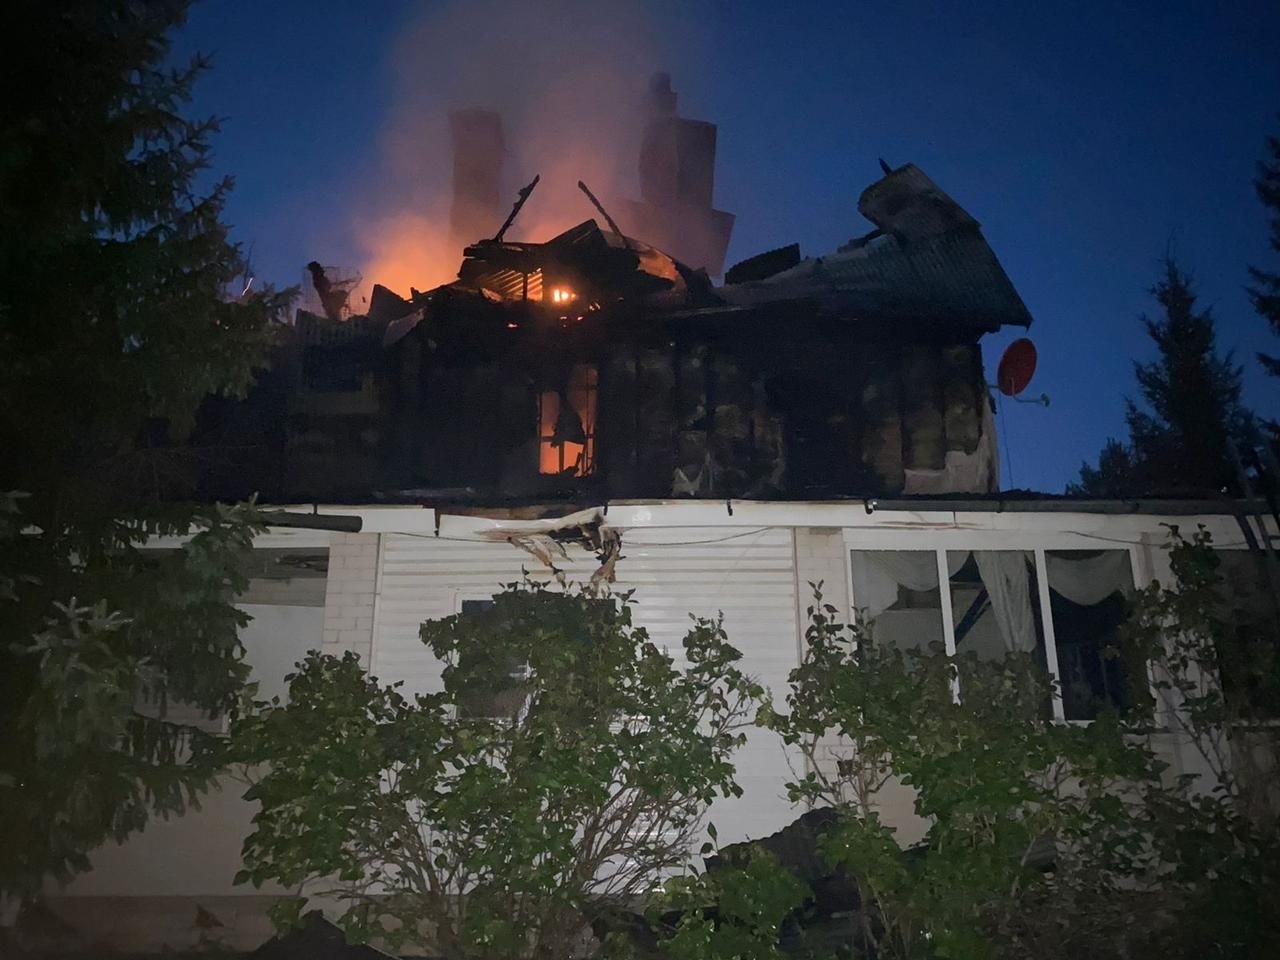 Мощный пожар уничтожил частный дом в Киржачском районе